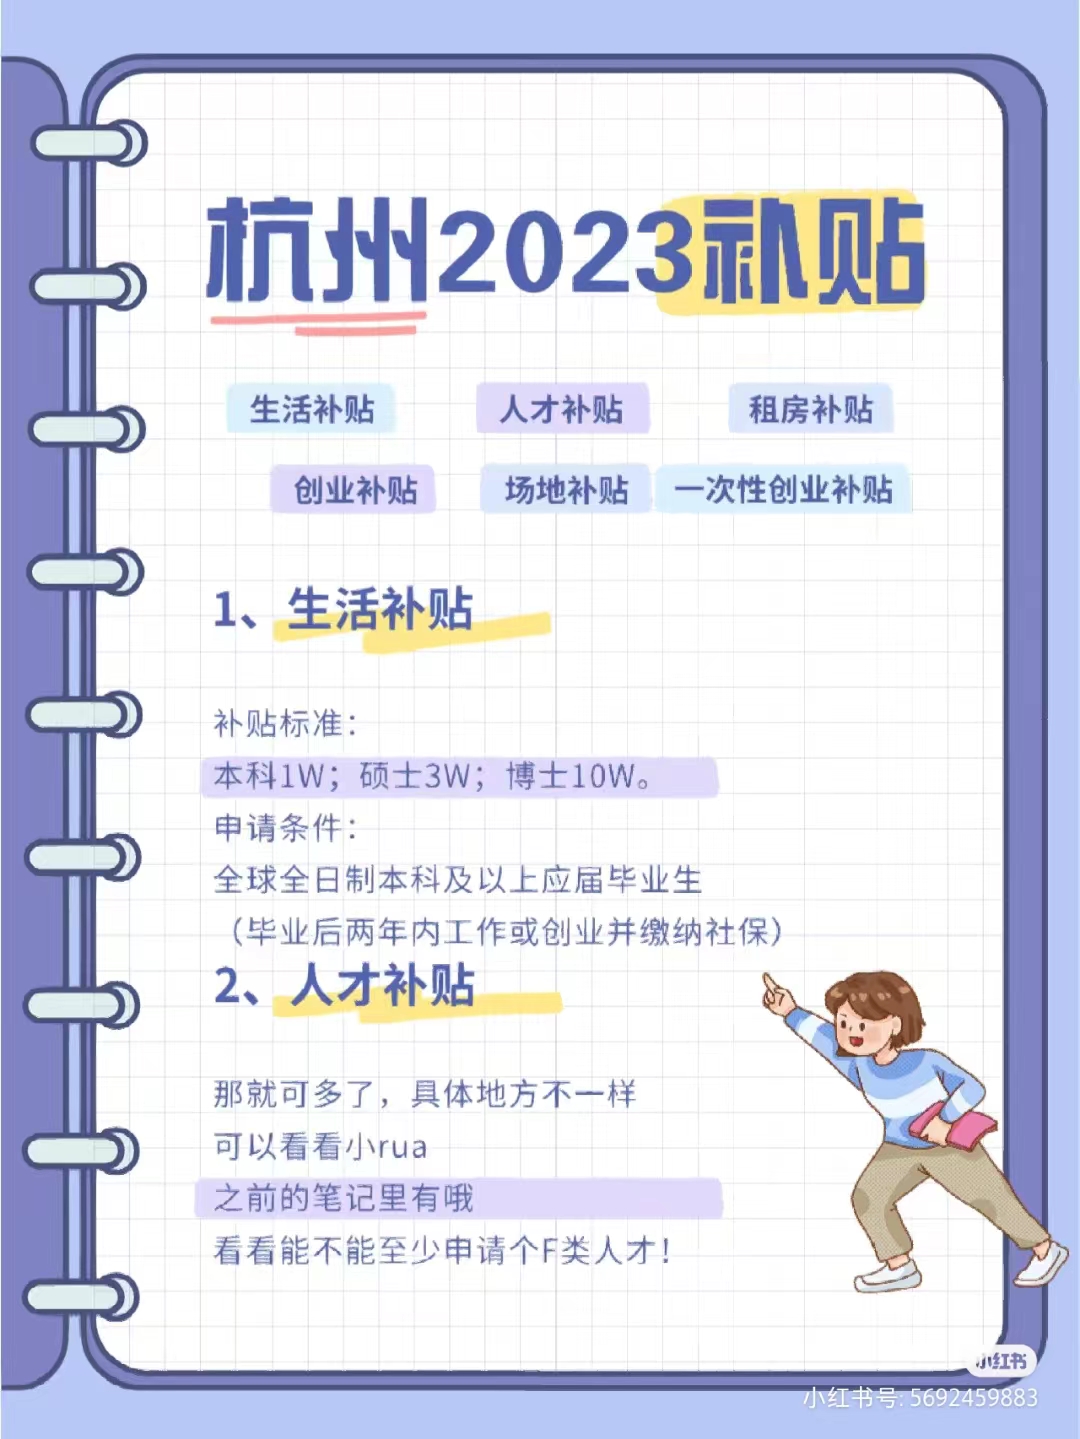 2023杭州租房补贴\人才补贴\创业补贴申领条件